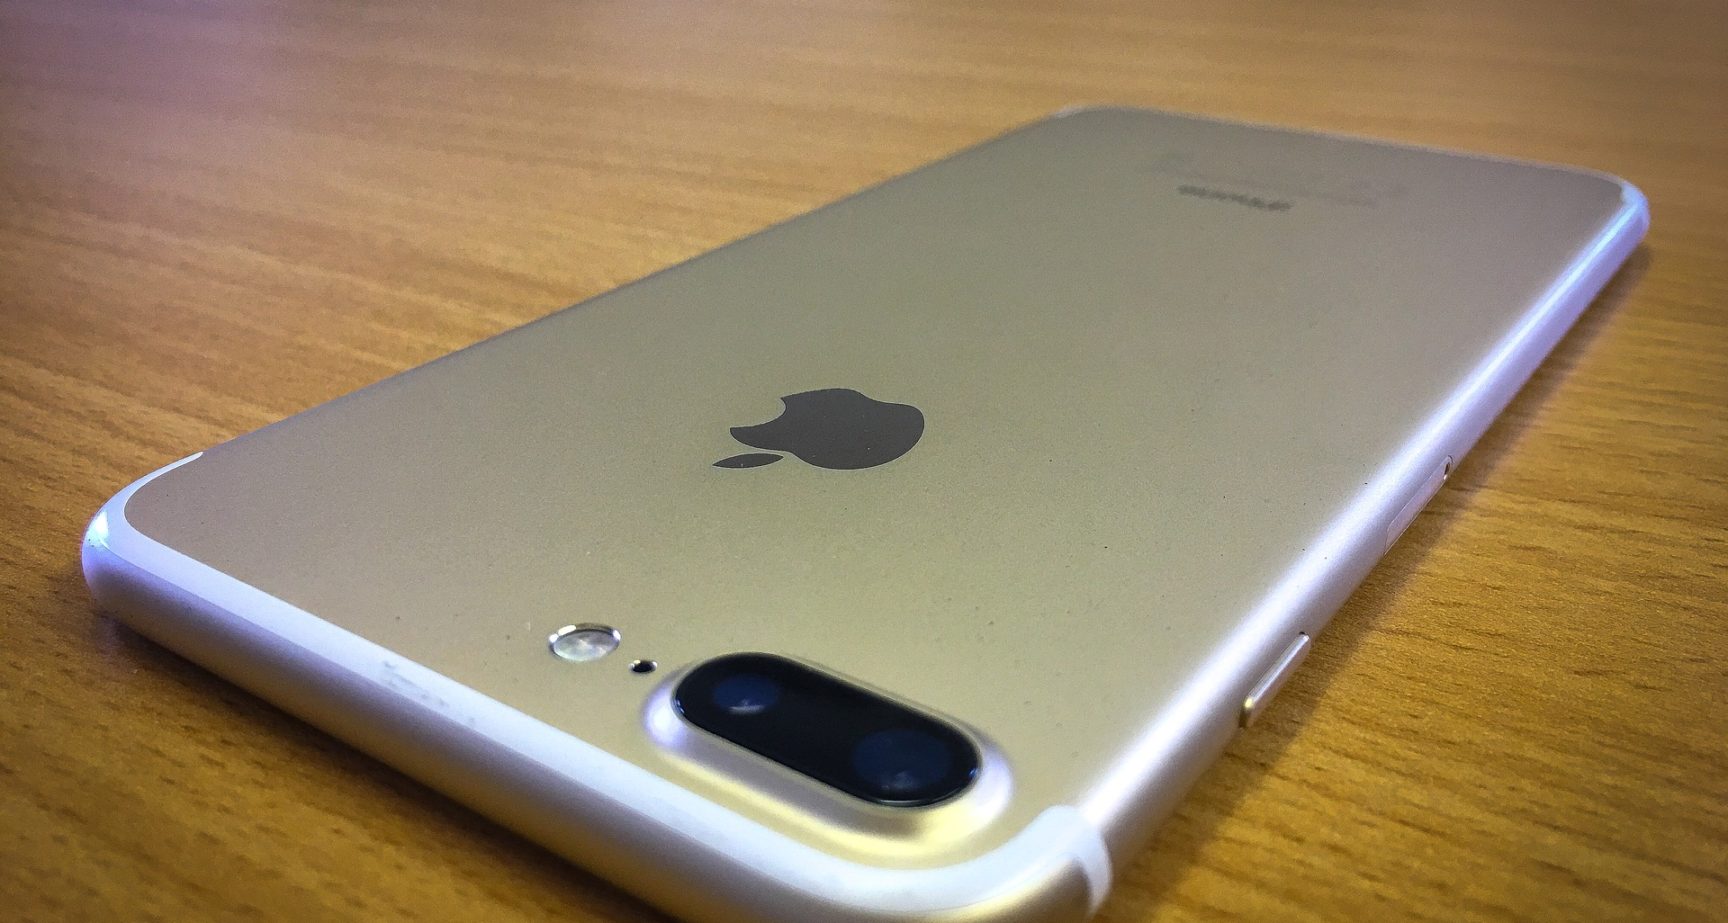 Apple sätter sin användarvänliga stämpel på de nya iPhone 7 kamerorna